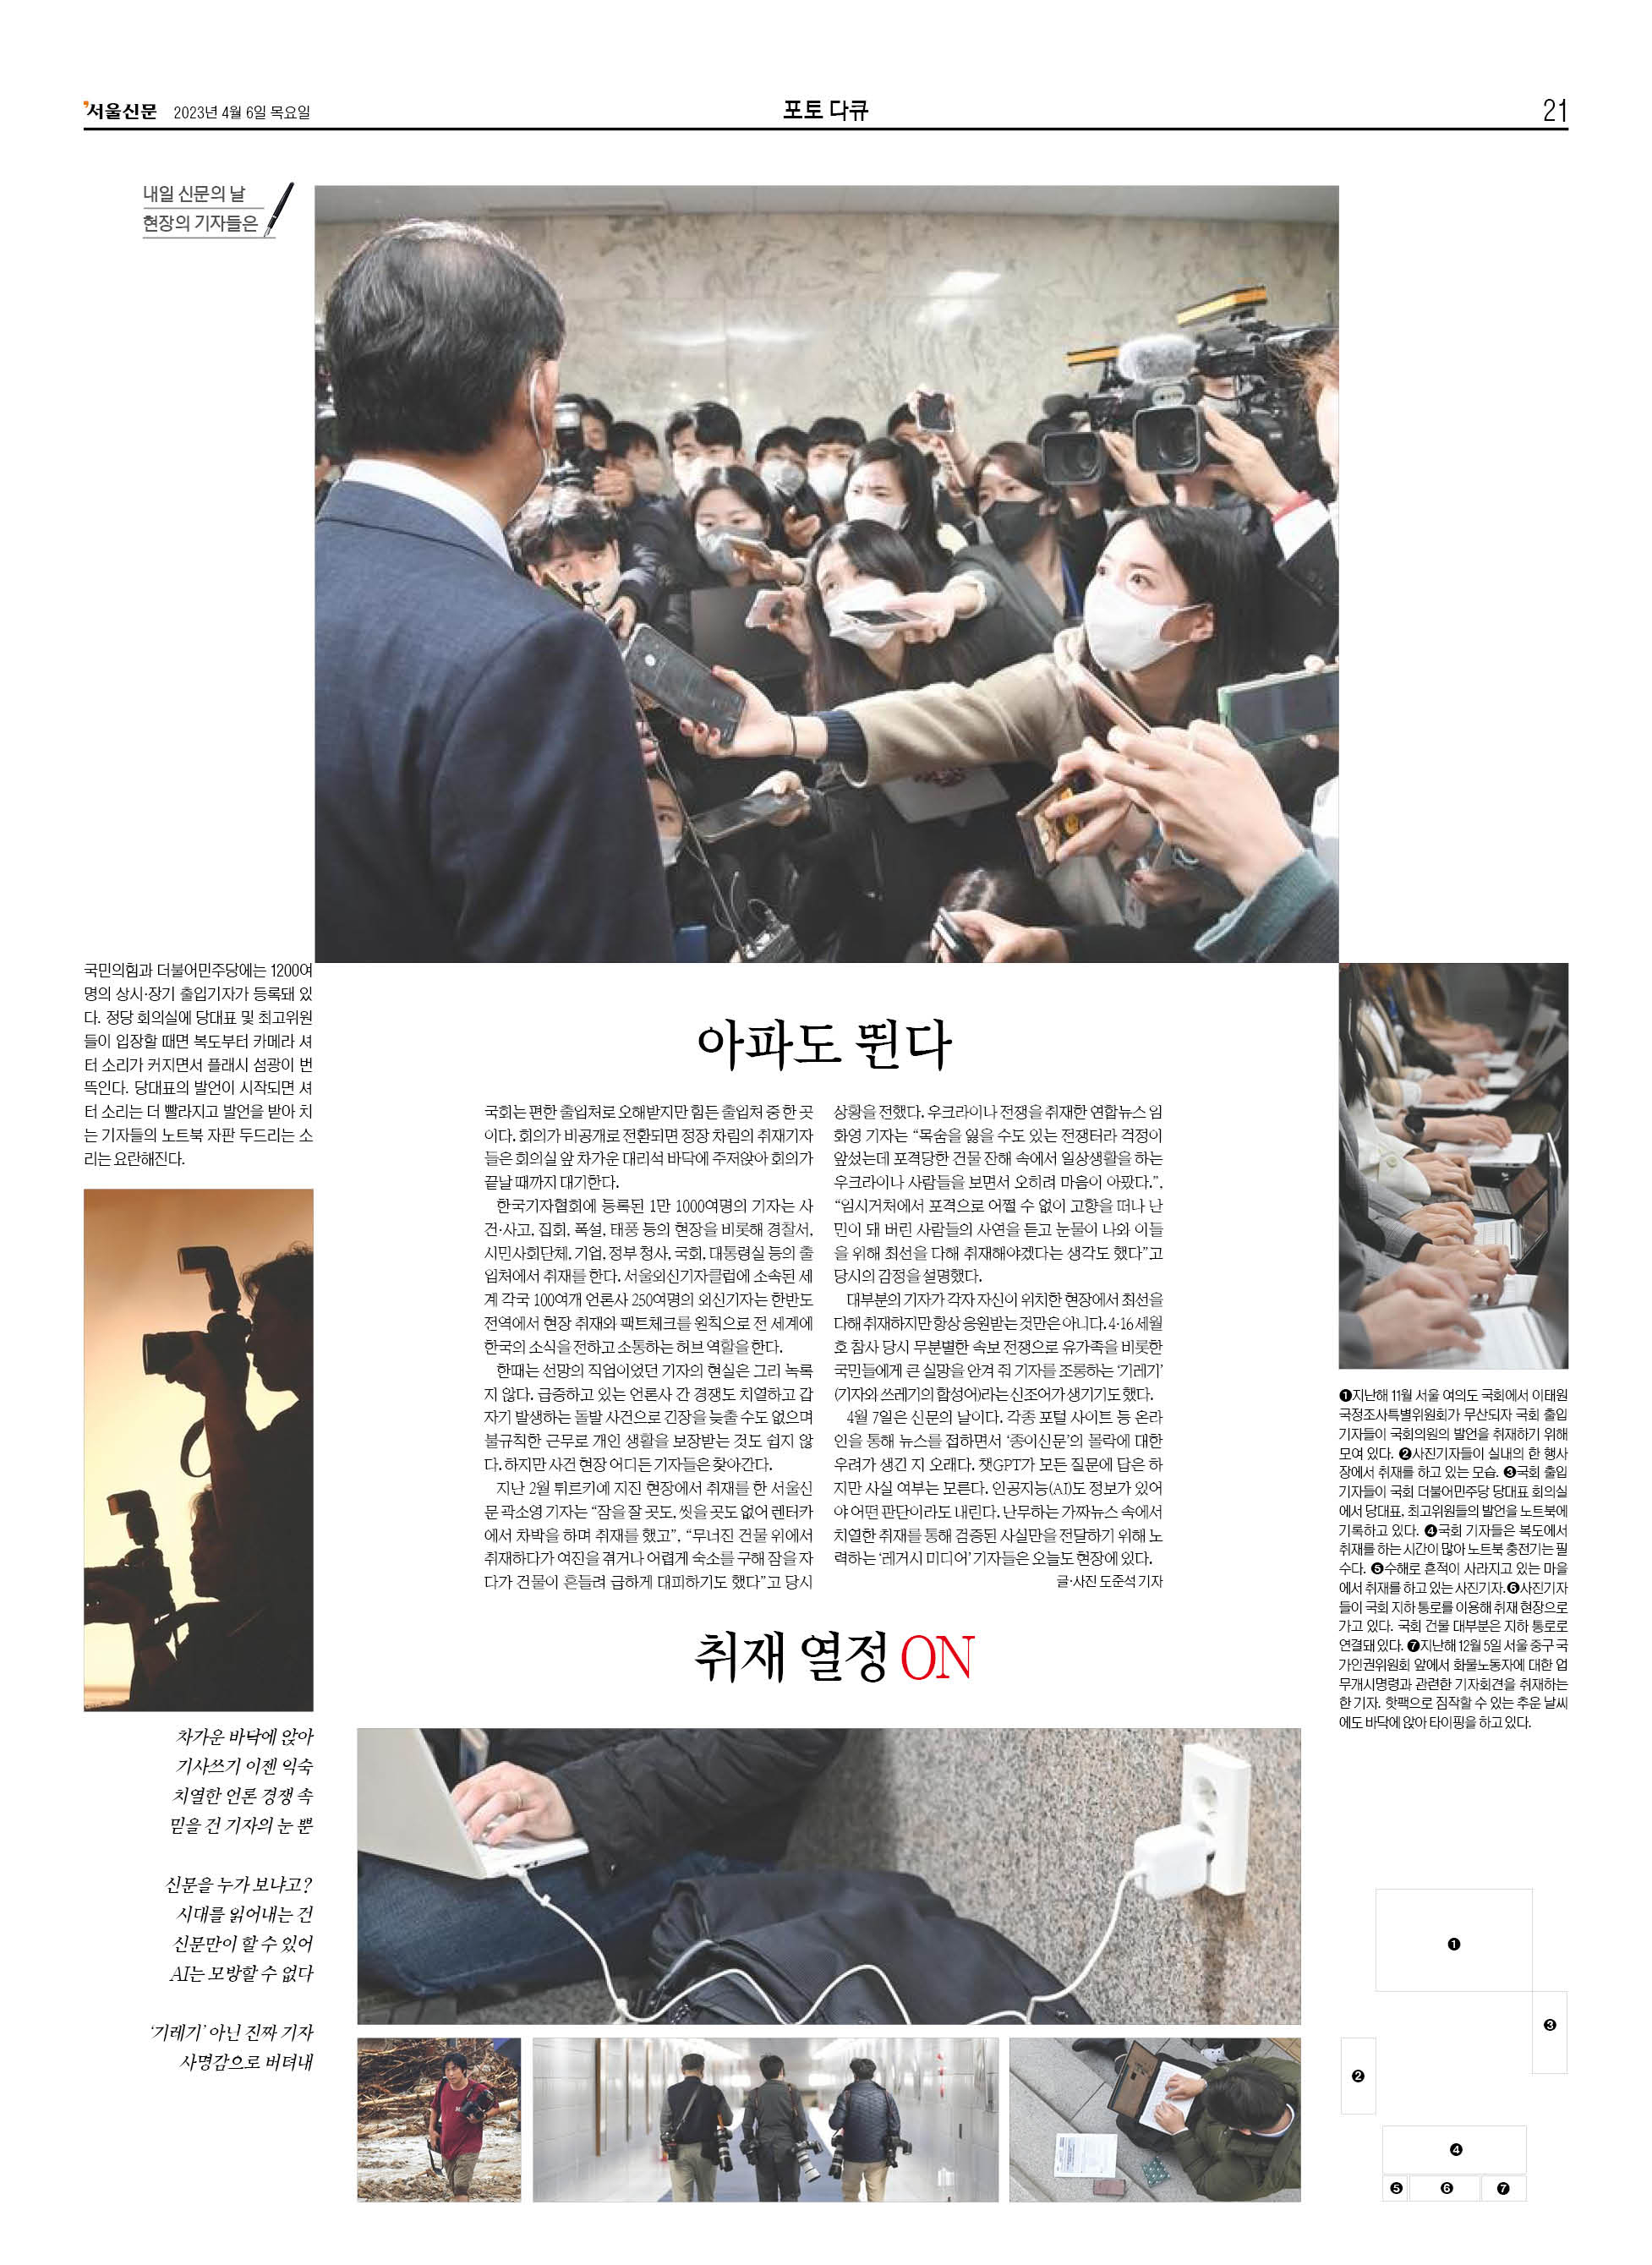 4월 7일 신문의 날 서울신문 [포토다큐] 지면.